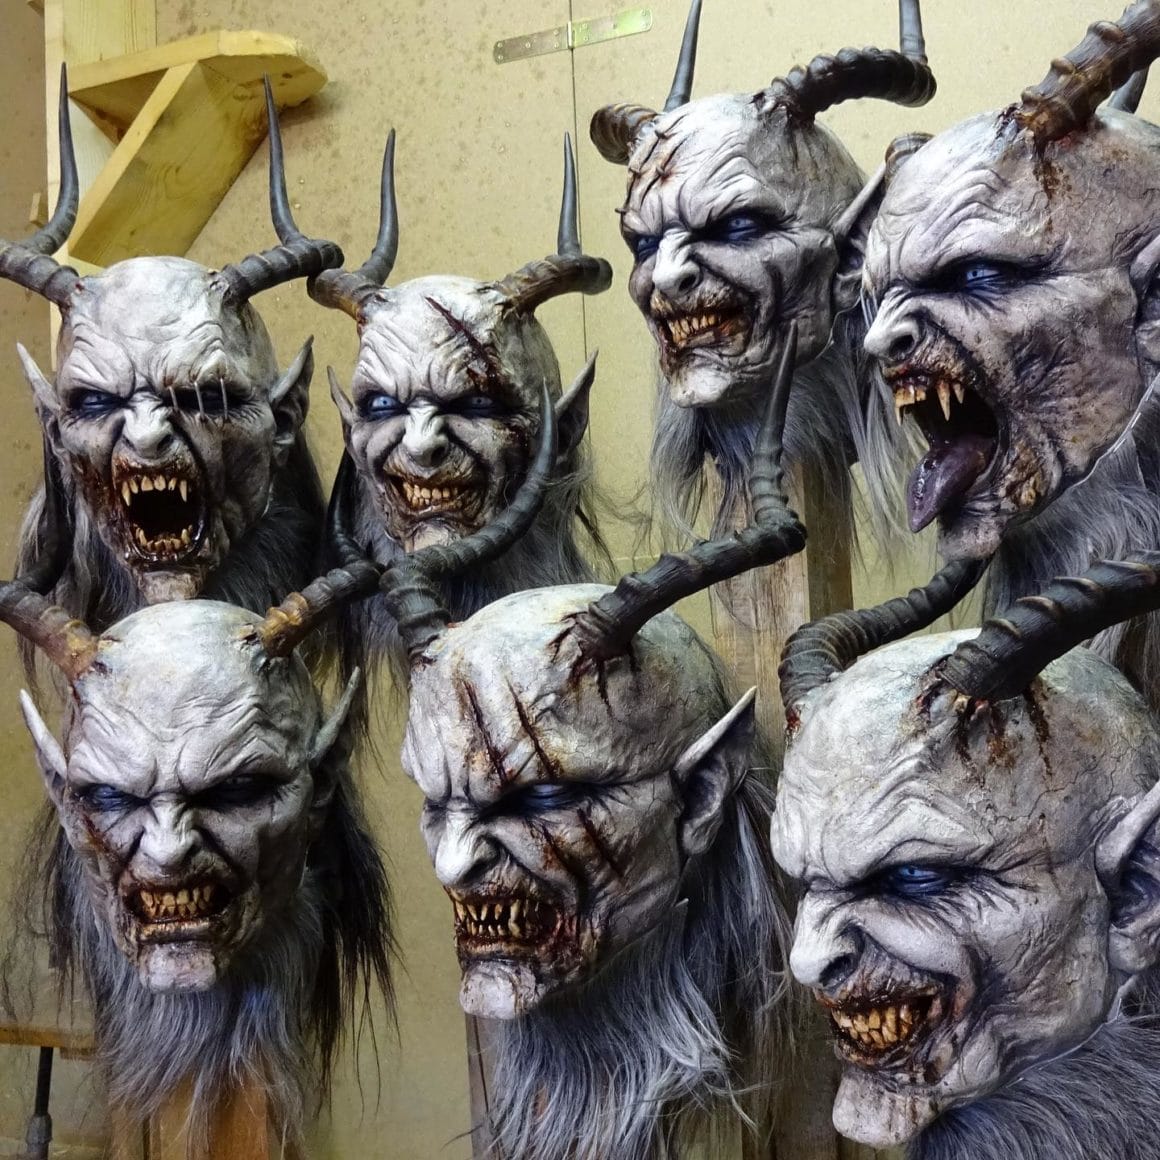 Exposition de masques créés par Stefan Koidl. Ils représentent des monstres aux grandes cornes, aux bouches badigeonnées de sang et aux dents jaunes.